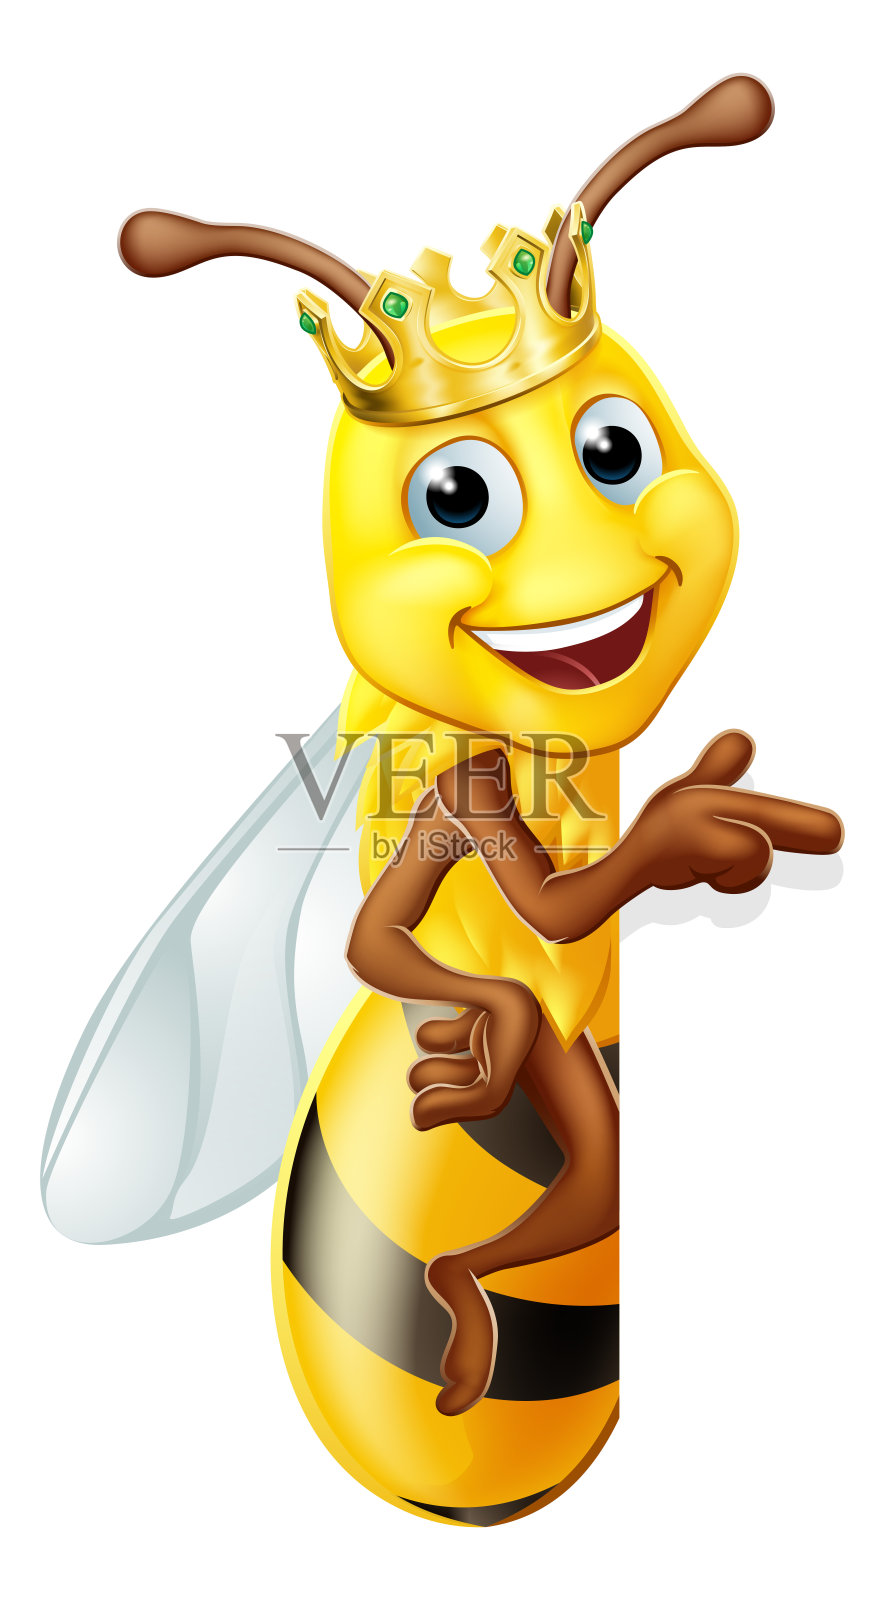 蜂王大黄蜂在皇冠卡通中的大黄蜂设计元素图片